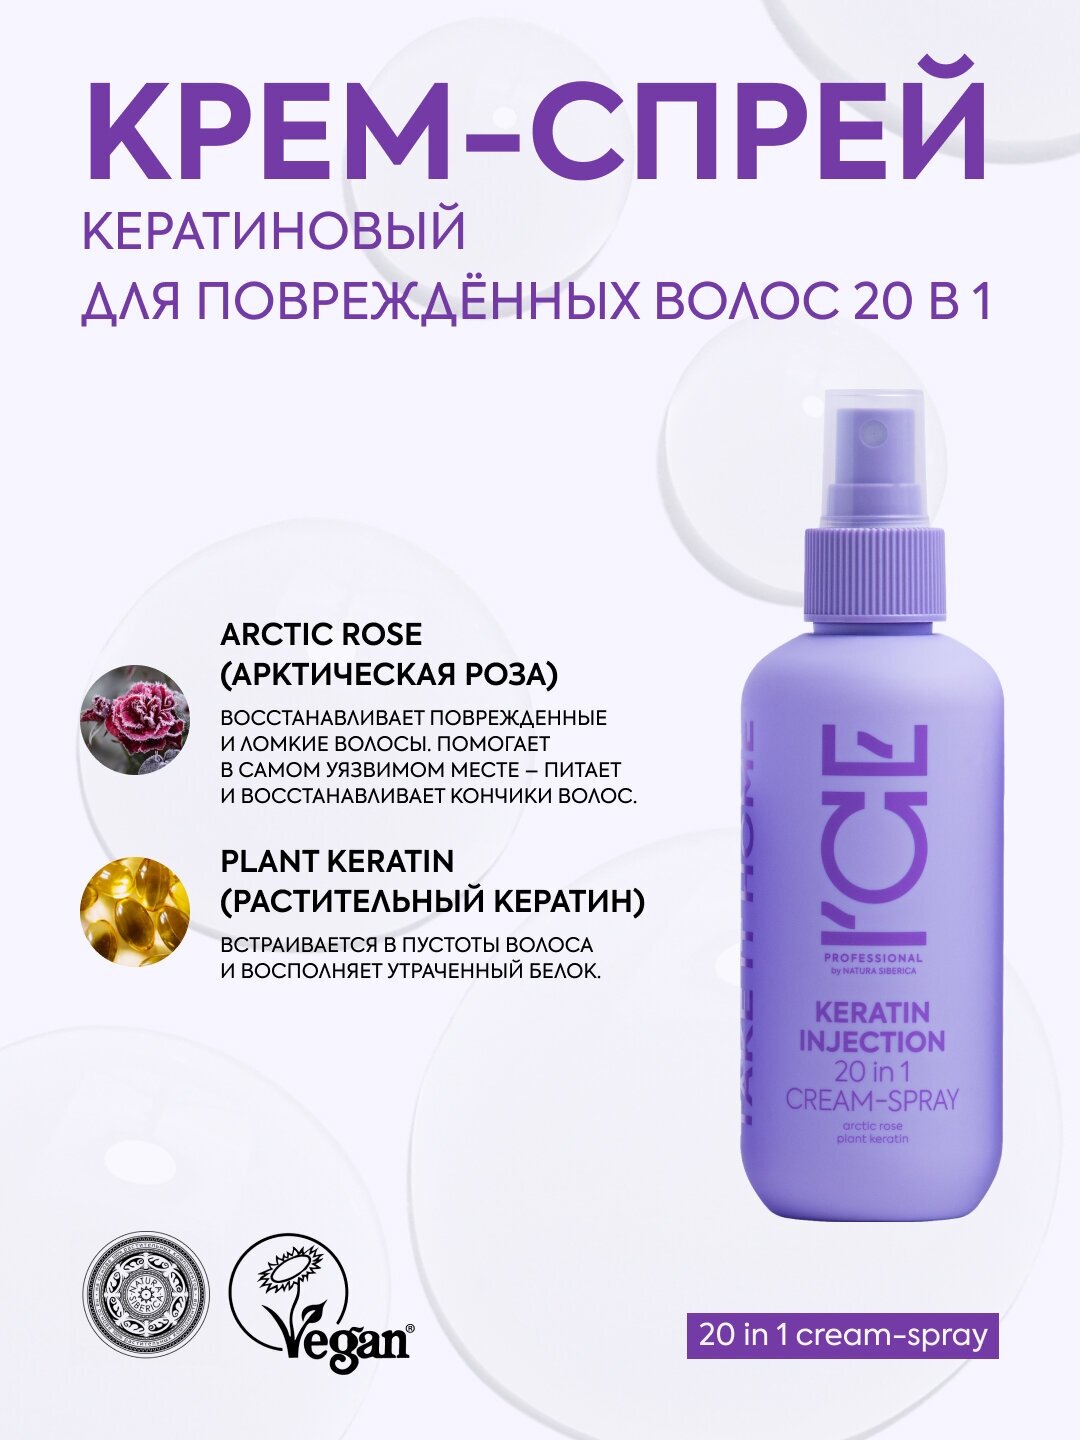 Кератиновый спрей для поврежденных волос 20 в 1 Keratin Injection ICE Professional by Natura Siberica, Take It Home, 200 мл